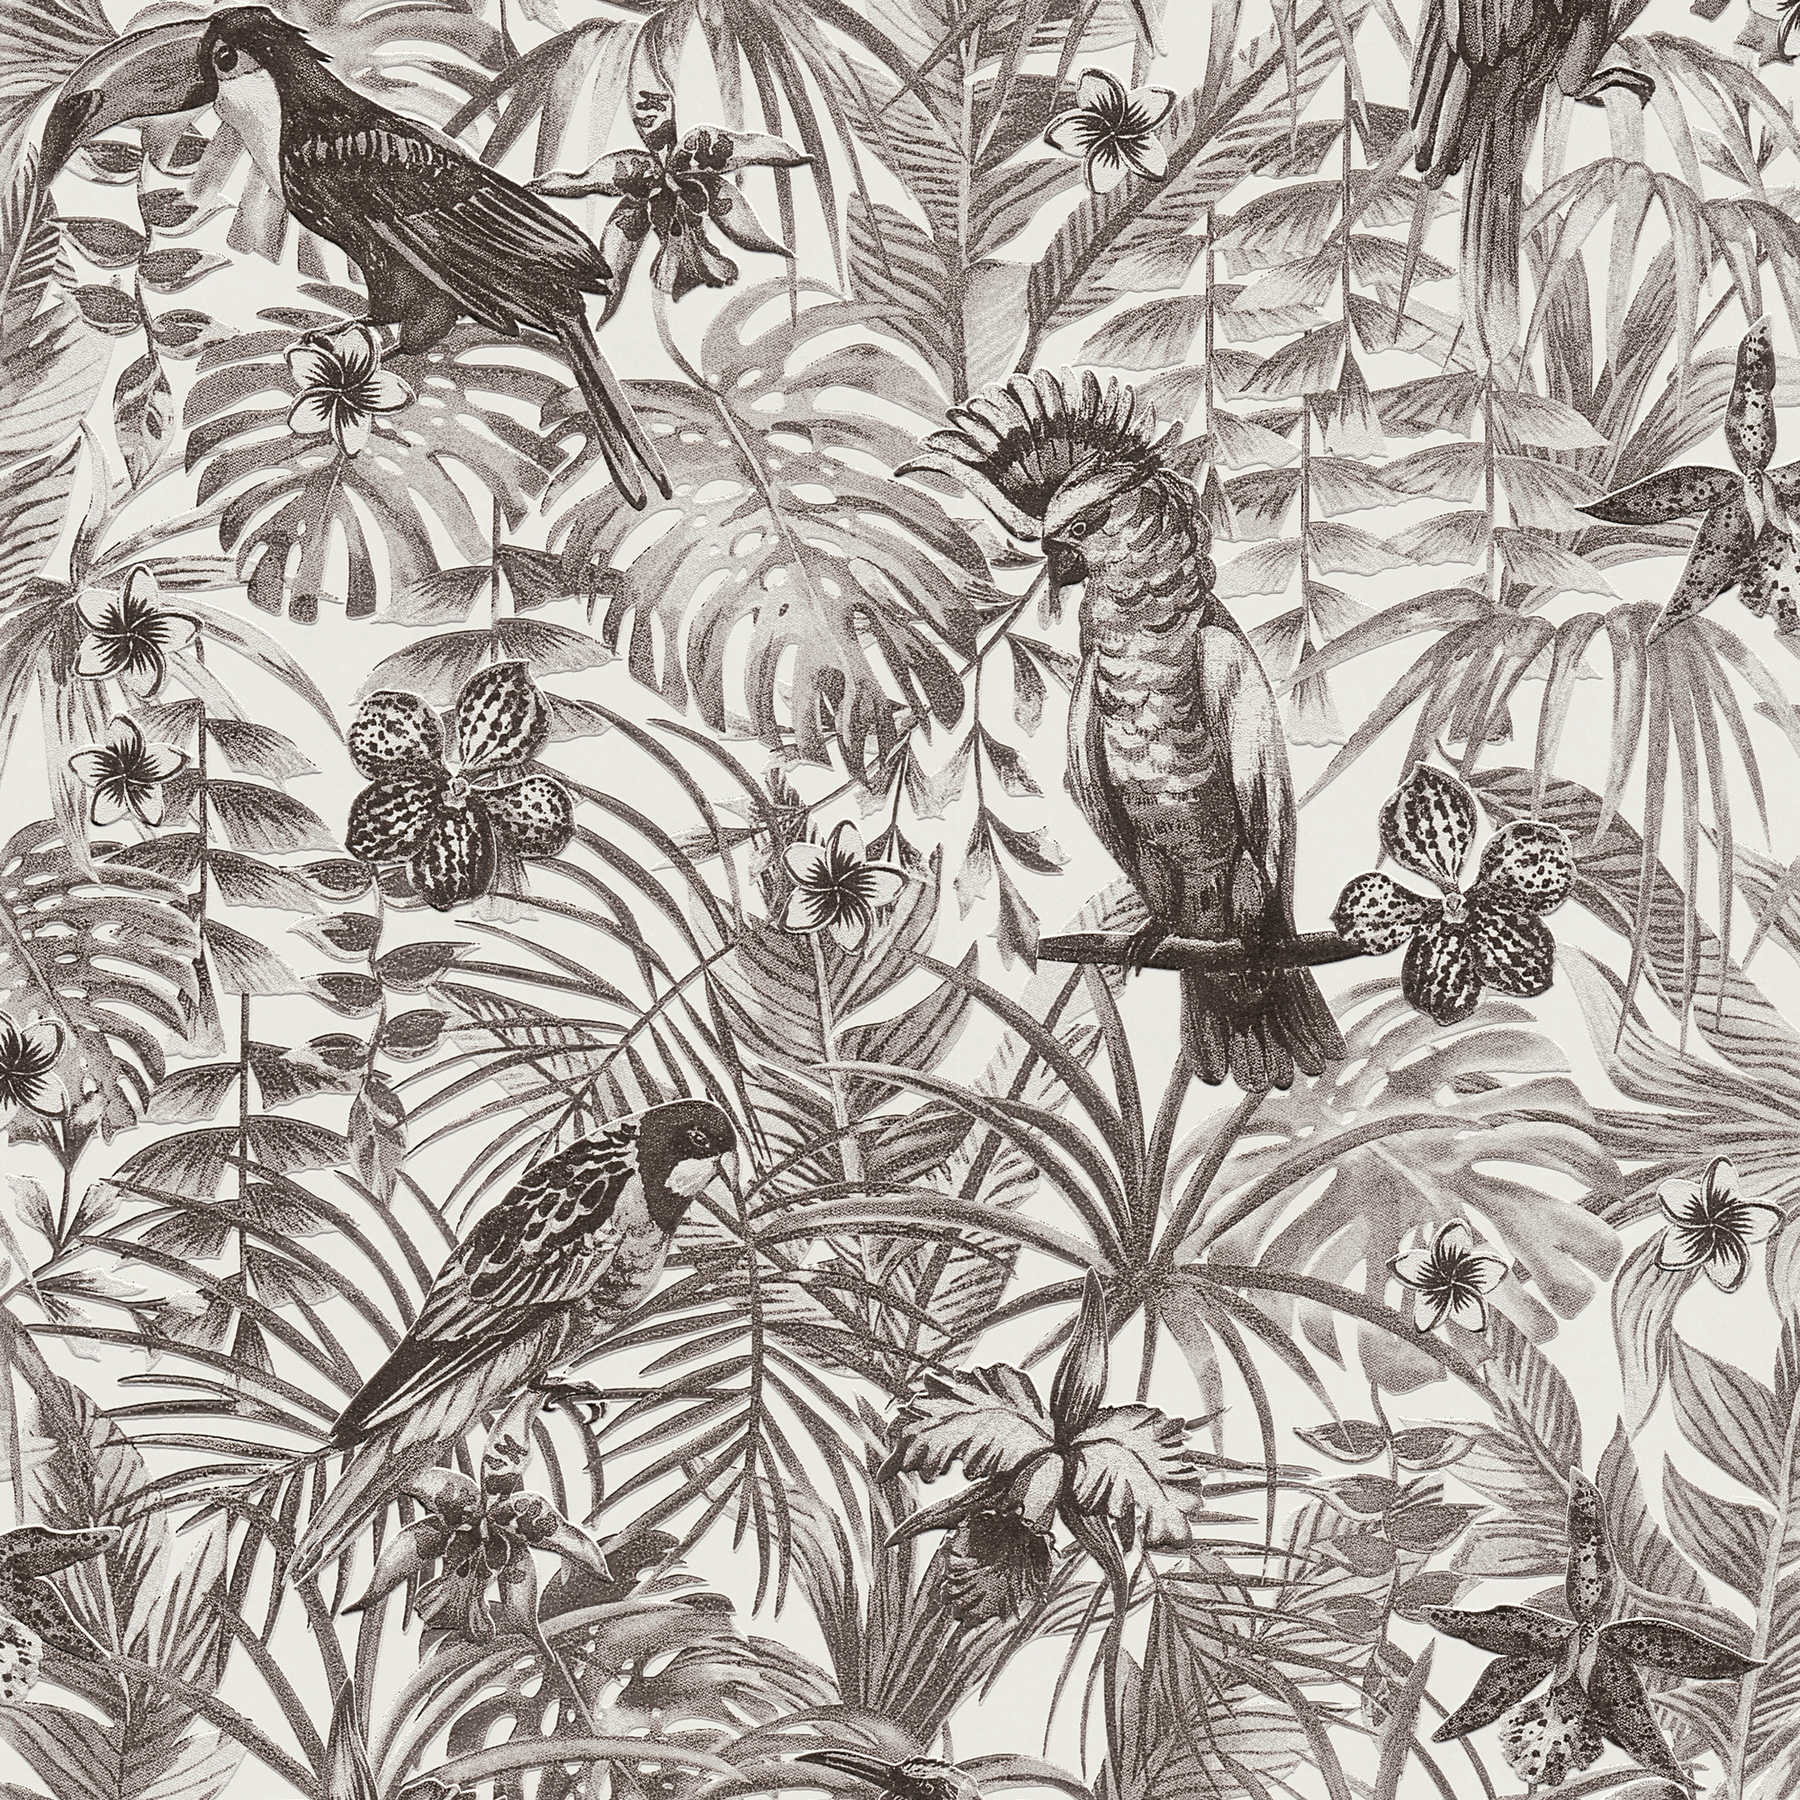 Exotisch behang tropische vogels, bloemen & bladeren - zwart, wit, grijs
